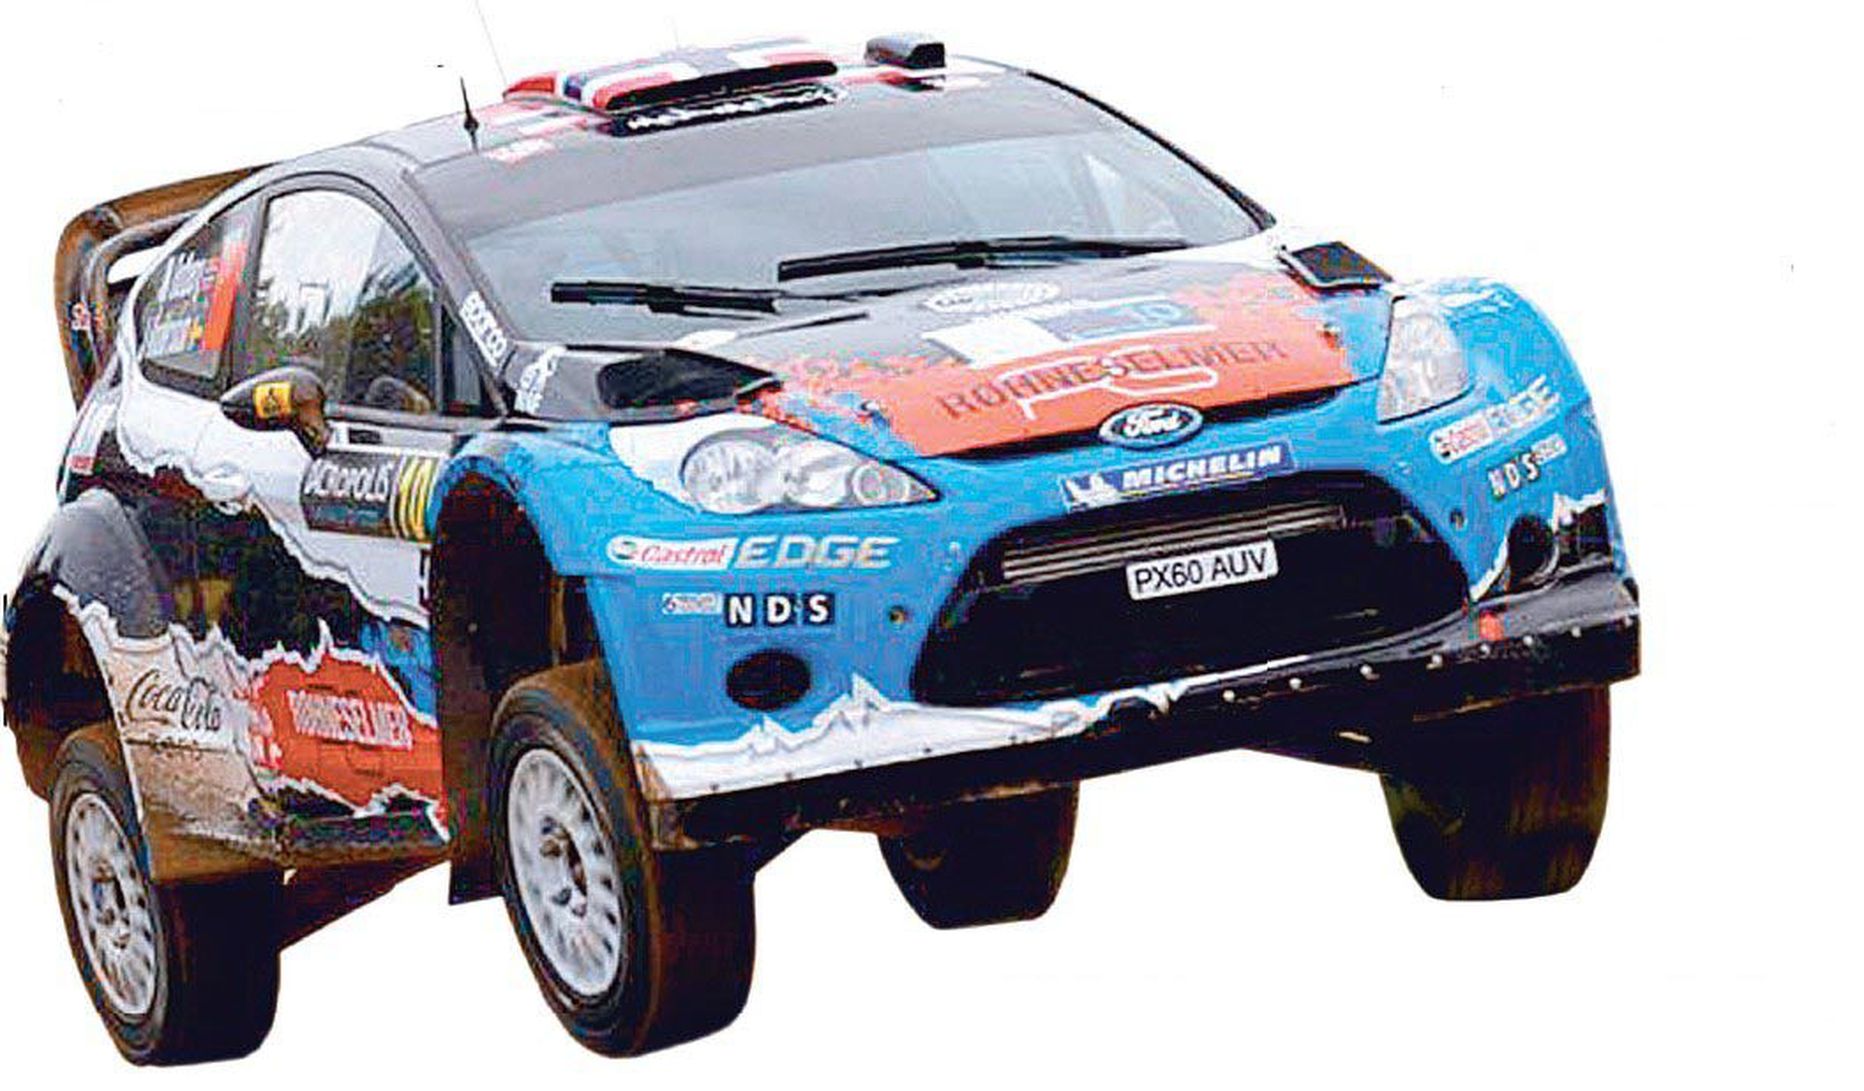 Mullu Rally Estonial võidutsenud Mats Østbergi sponsorreklaamidest kirju rallimasin.